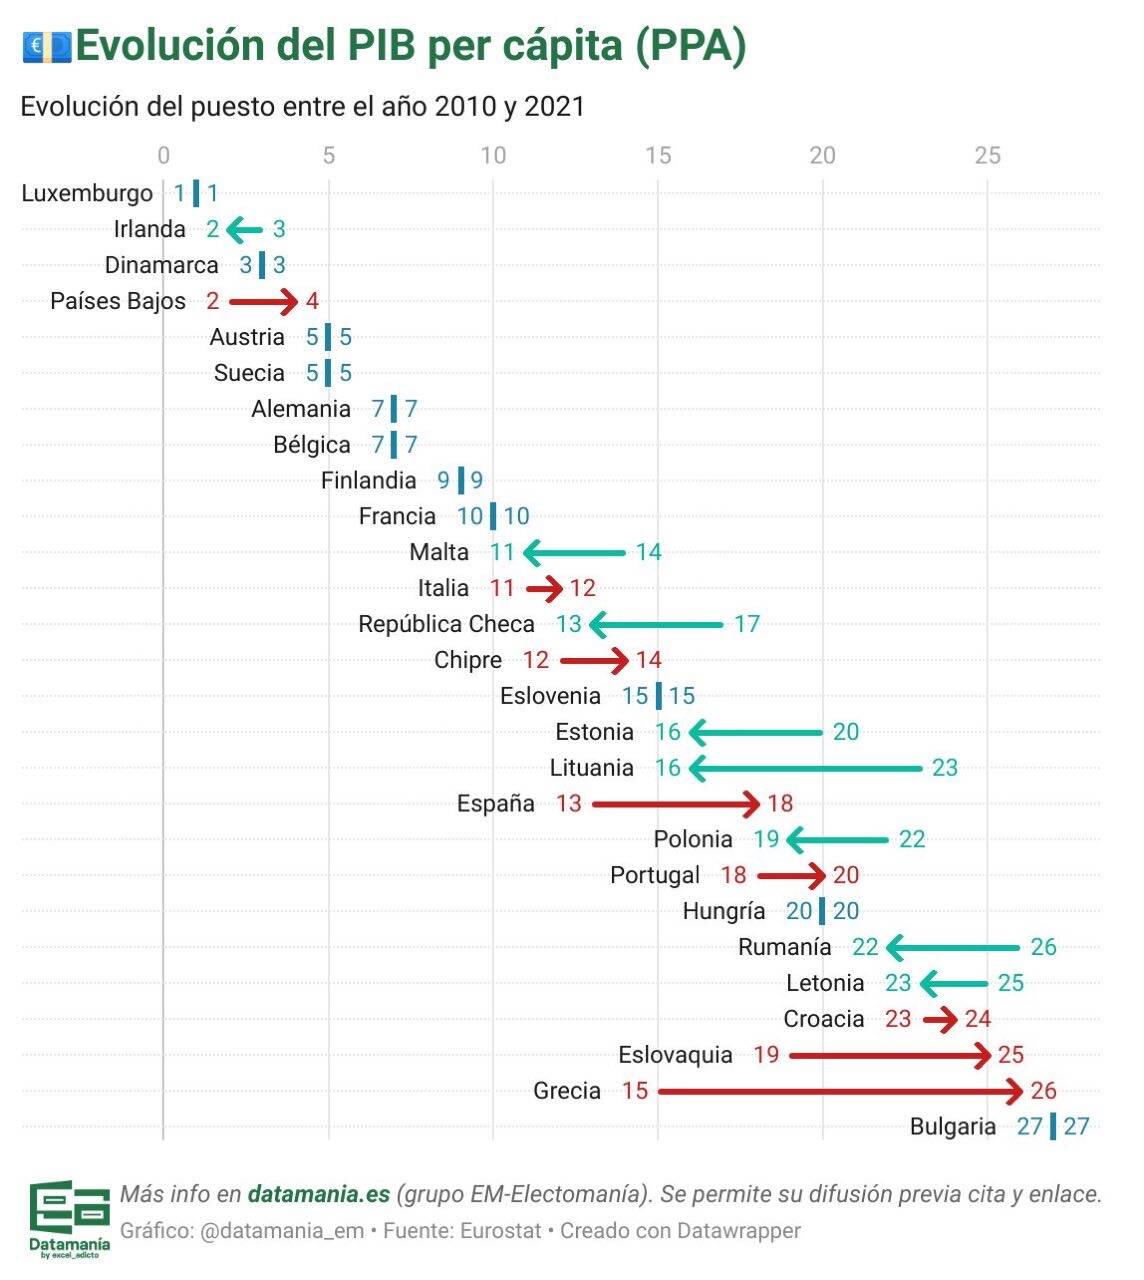 Gráfico 1: Evolución del PIB per cápita en la UE entre 2010 y 2021 Fuente: Datamania y Eurostat (https://electomania.es/datamania/estimaciones_pib/)